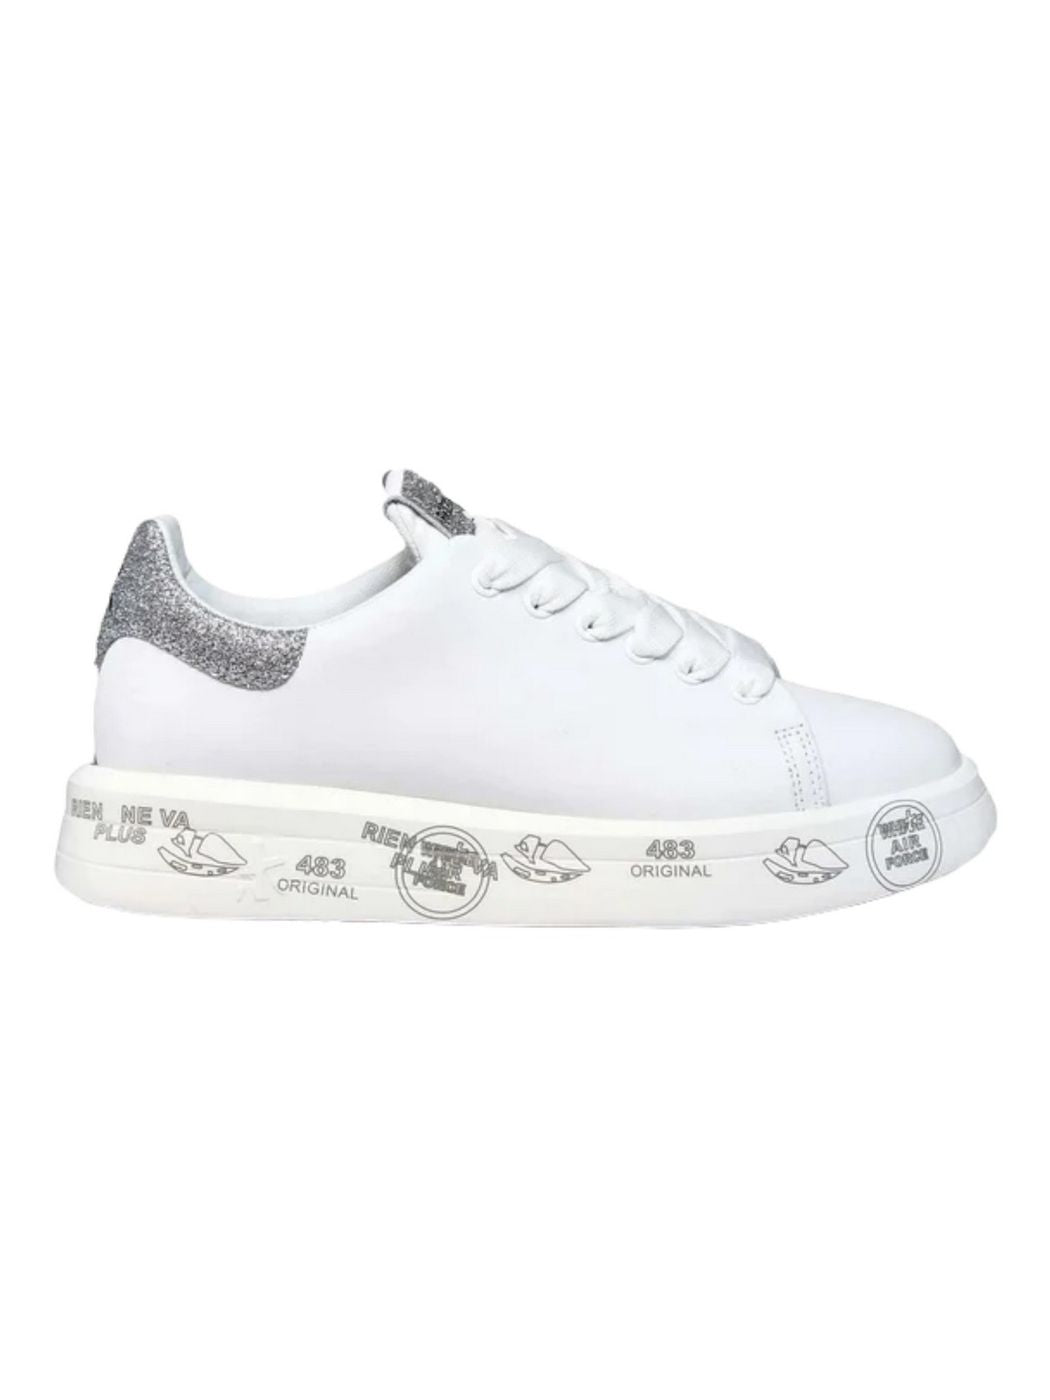 PREMIATA Femmes Sneaker BELLE VAR 4903 Blanc